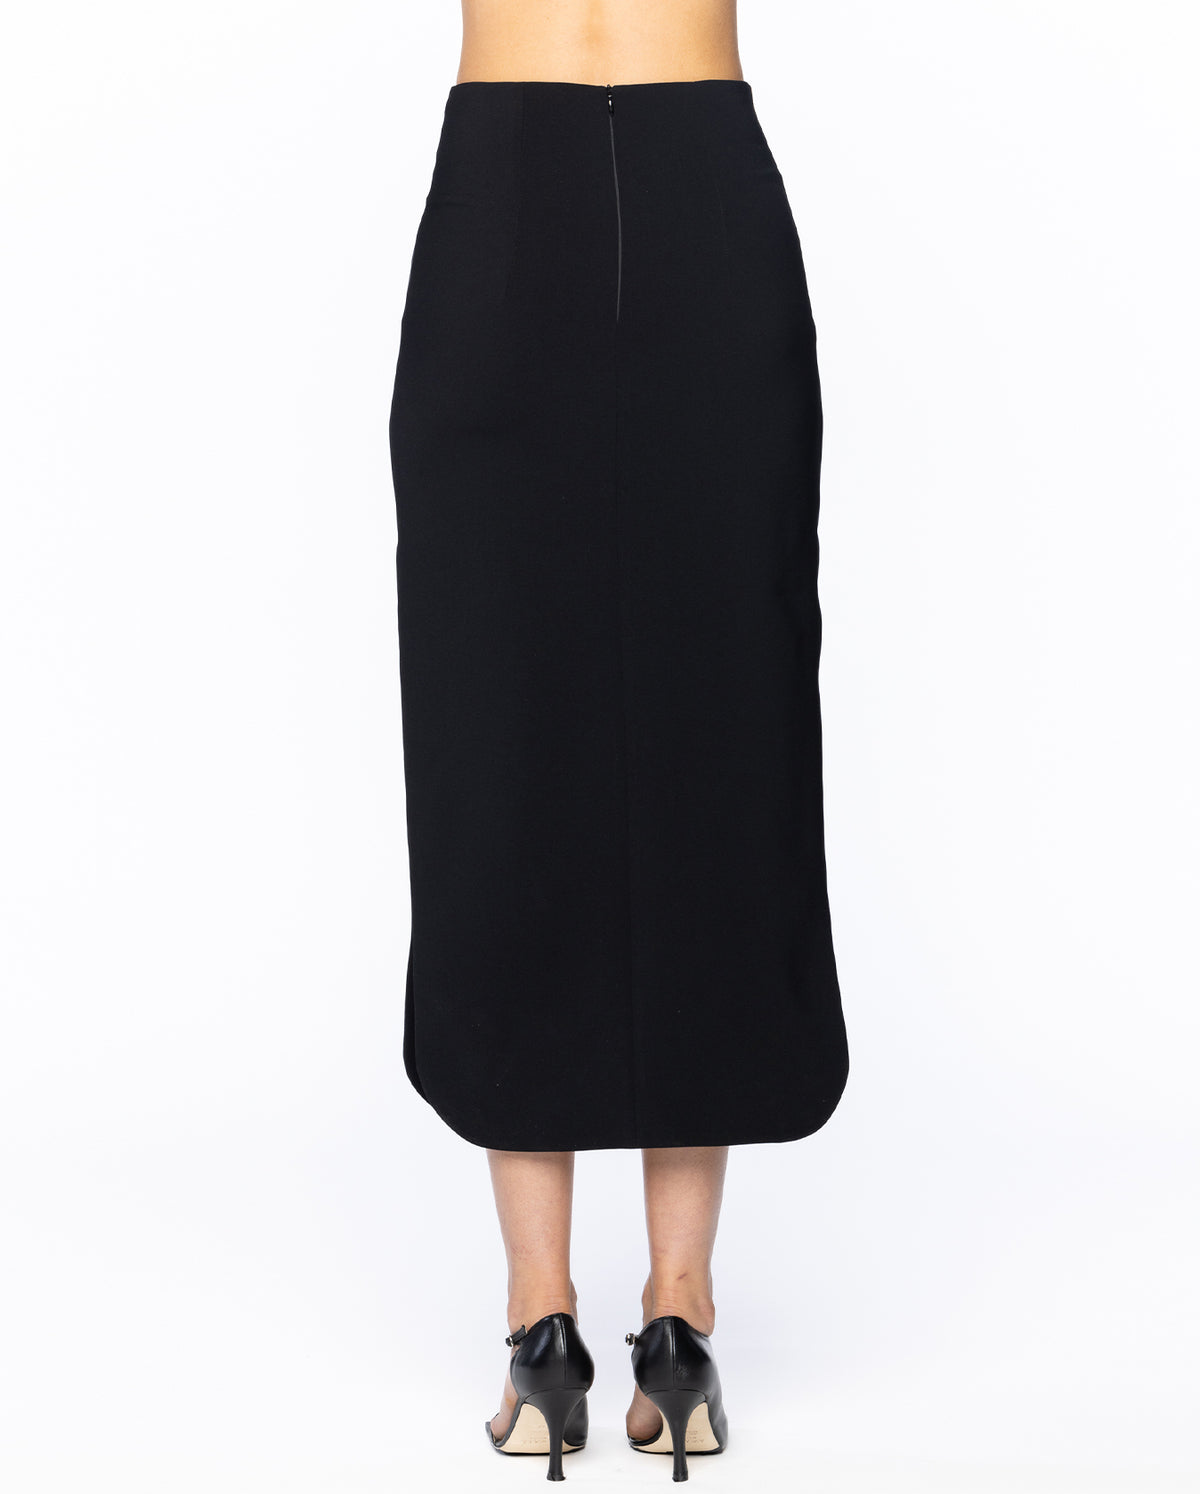 Maxi Skirt With Weaved Frame Insert